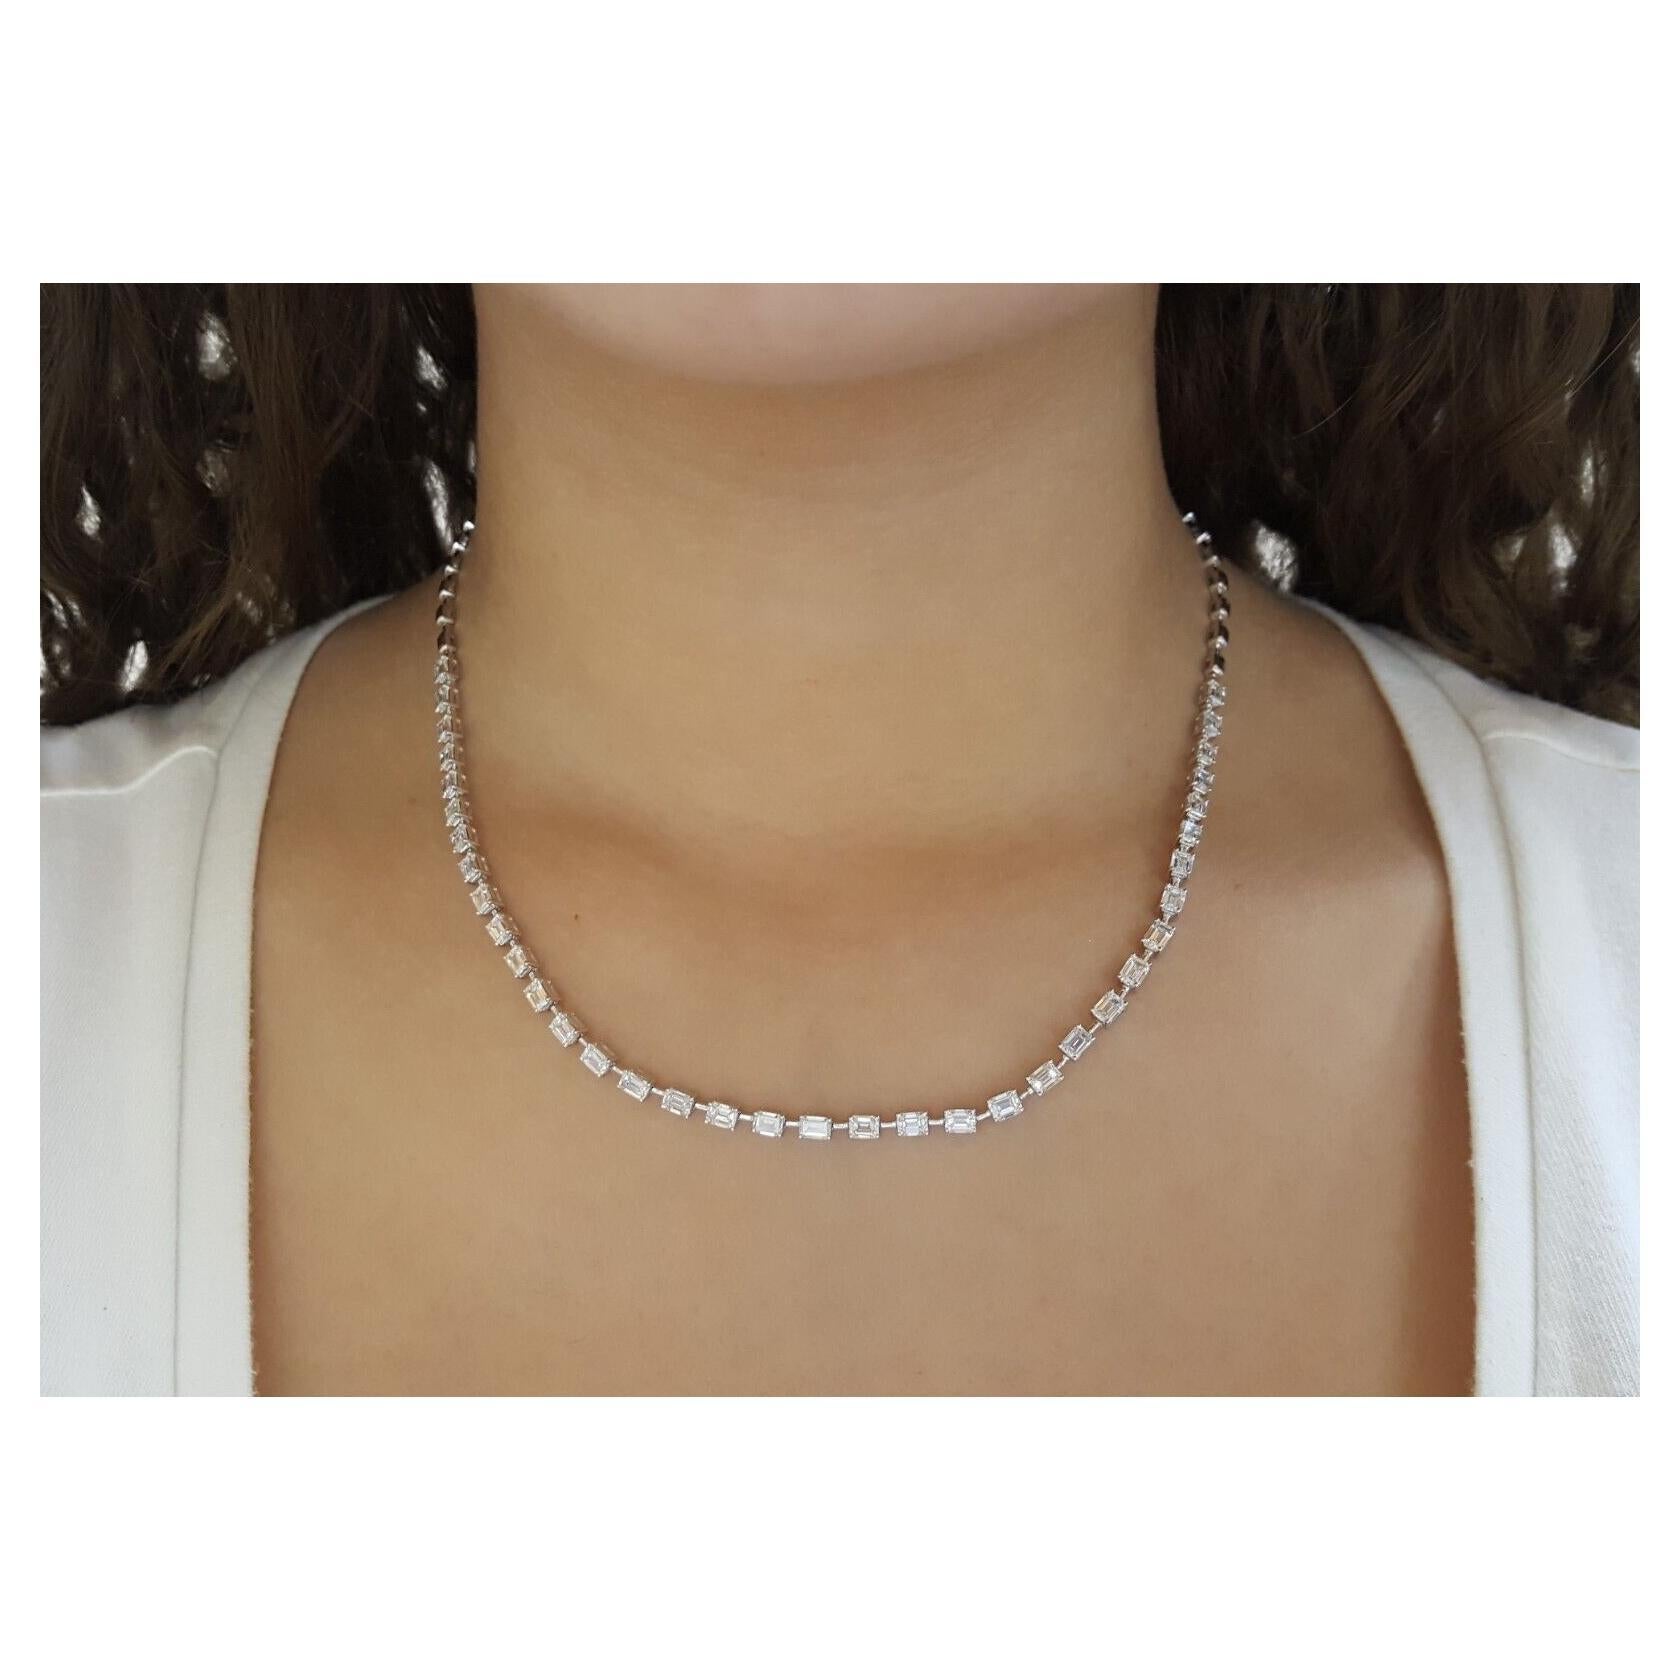  7.0 ct Emerald Brilliant Cut Diamond Line Necklace 14k White Gold 17